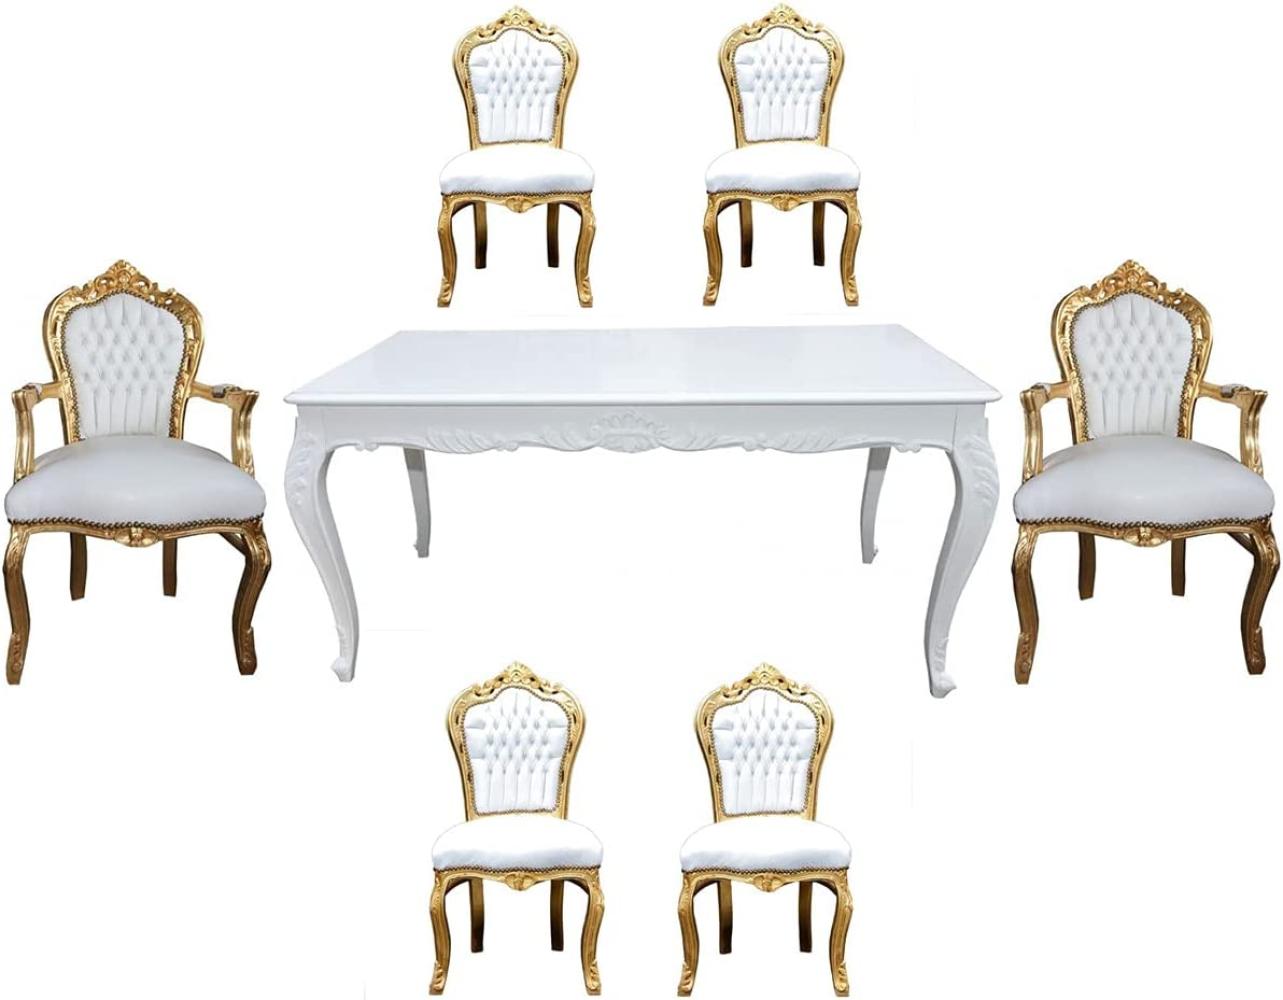 Casa Padrino Barock Esszimmer Set Weiß/Gold - Esstisch + 6 Stühle Bild 1